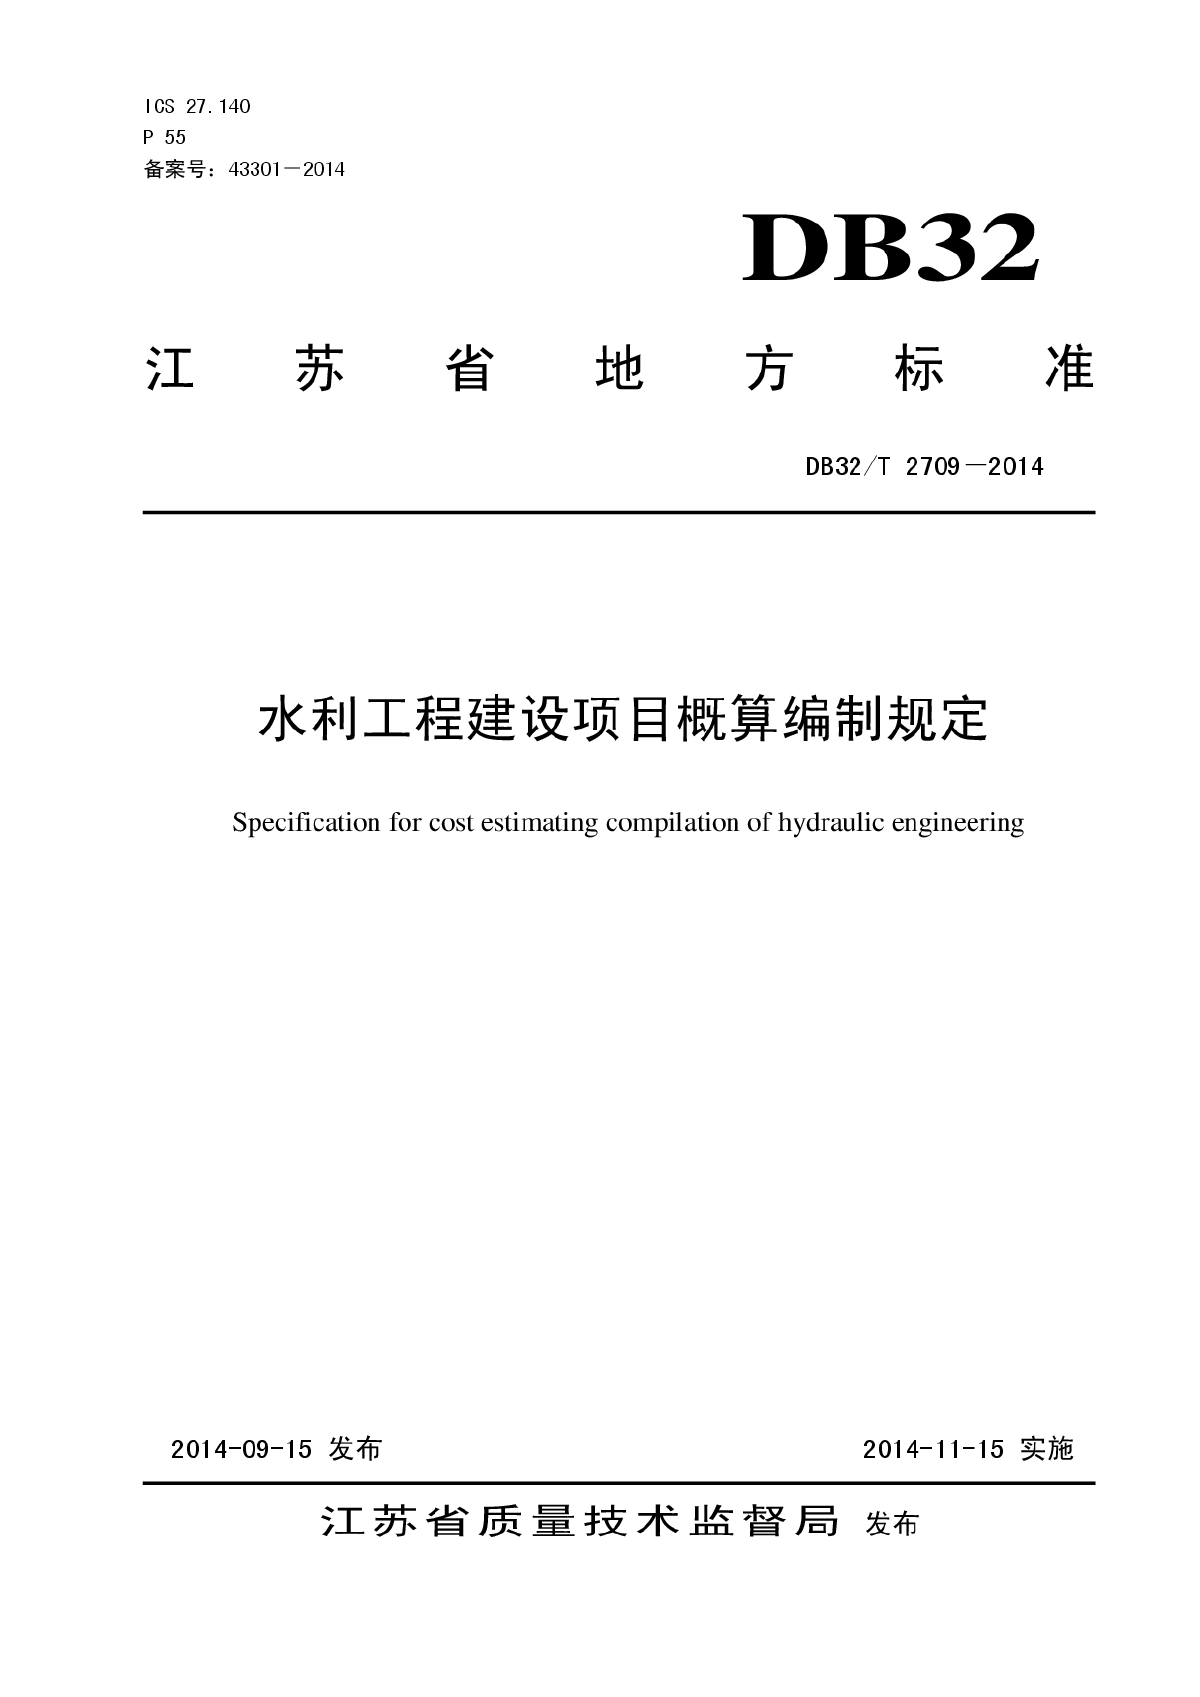 DB32T2709-2014水利工程概算编制规定